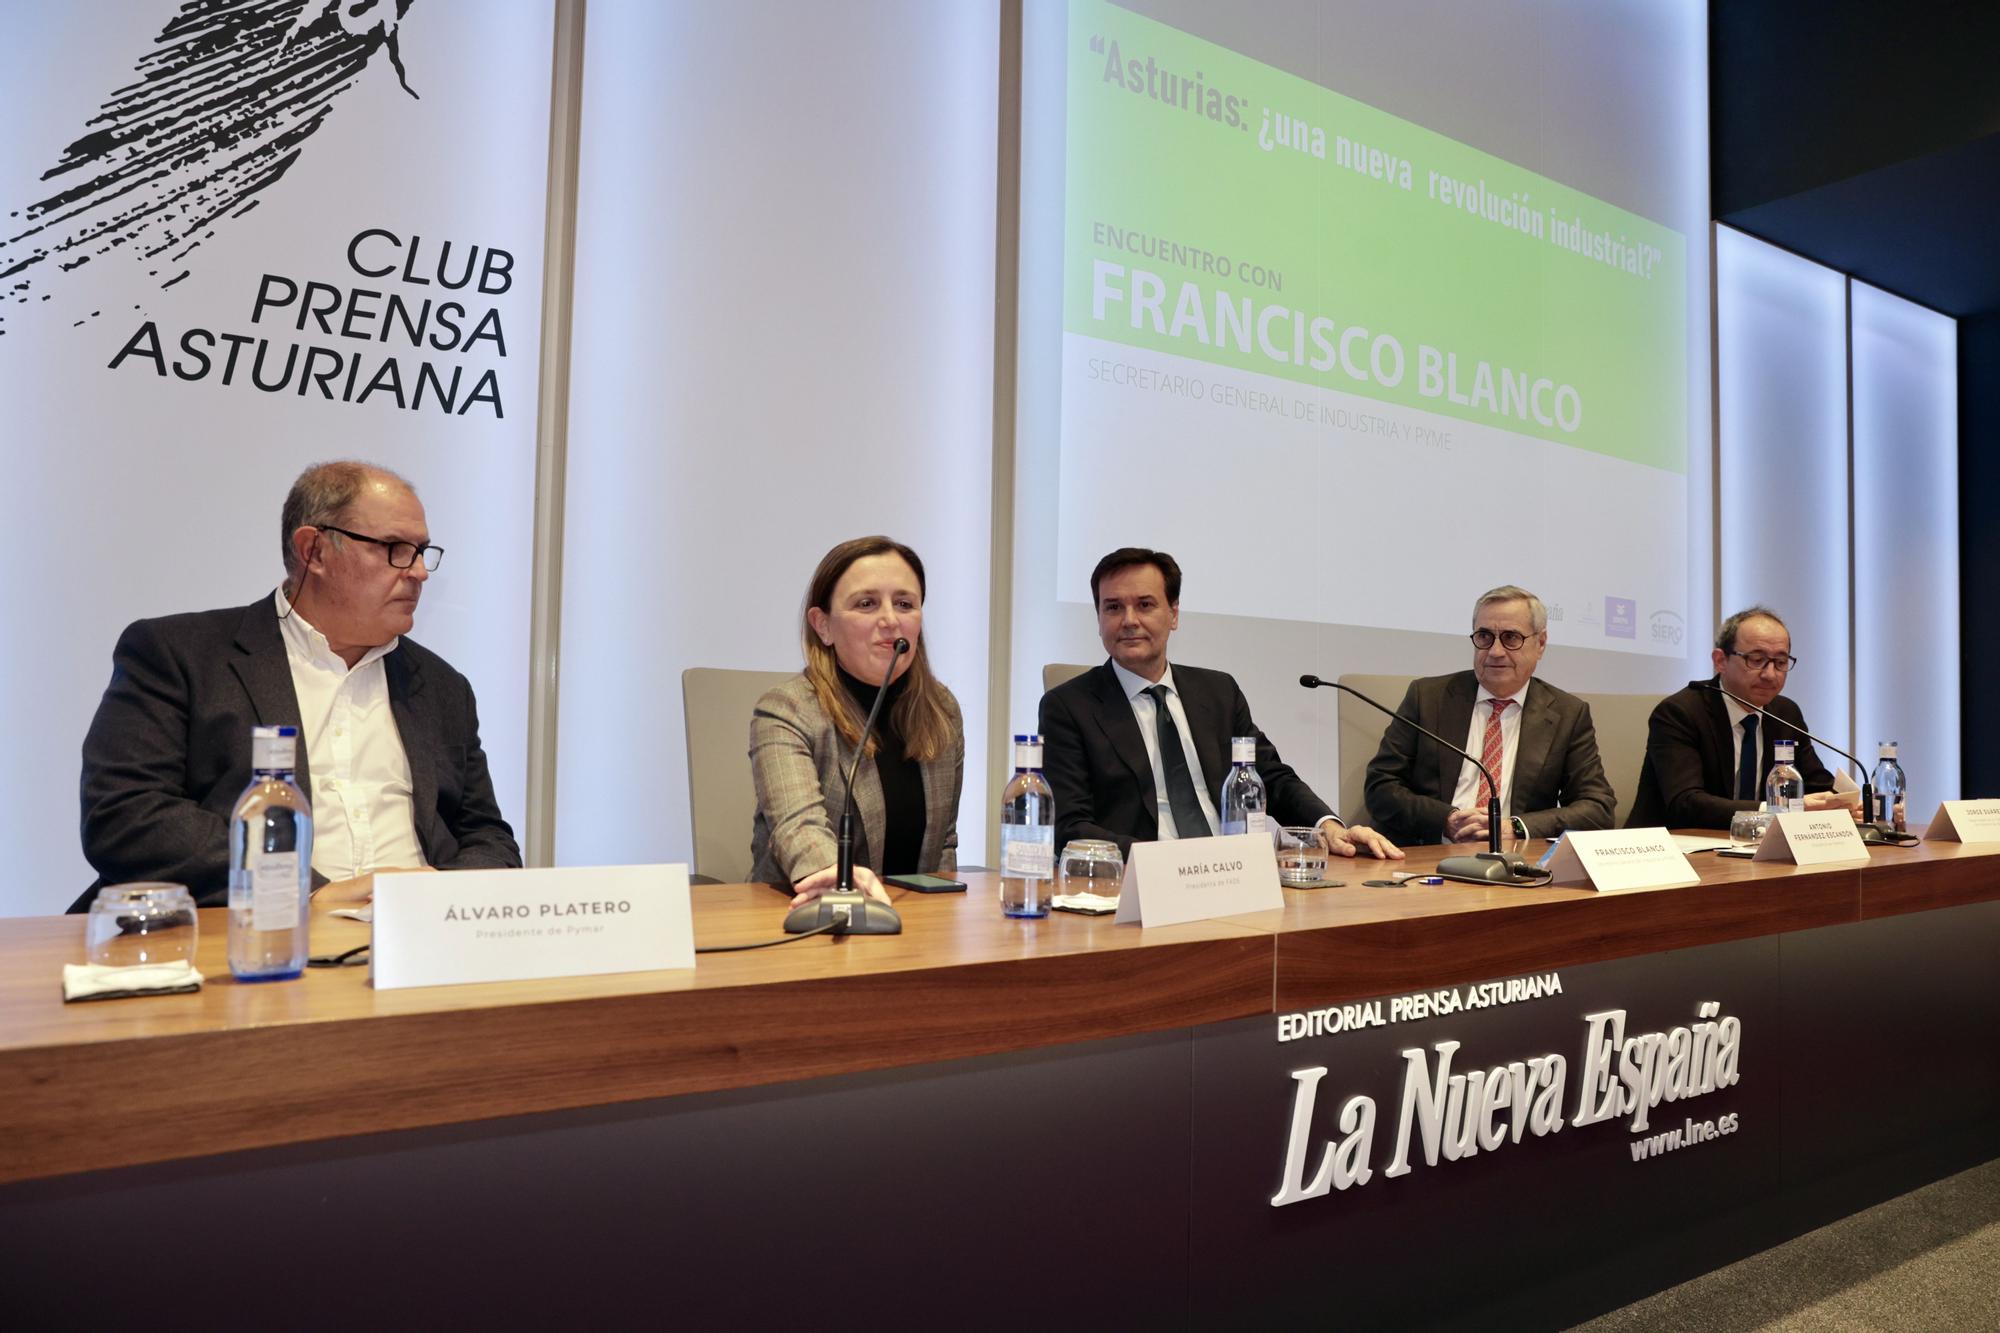 Encuentro en LA NUEVA ESPAÑA con Francisco Blanco, secretario general de Industria y Pyme